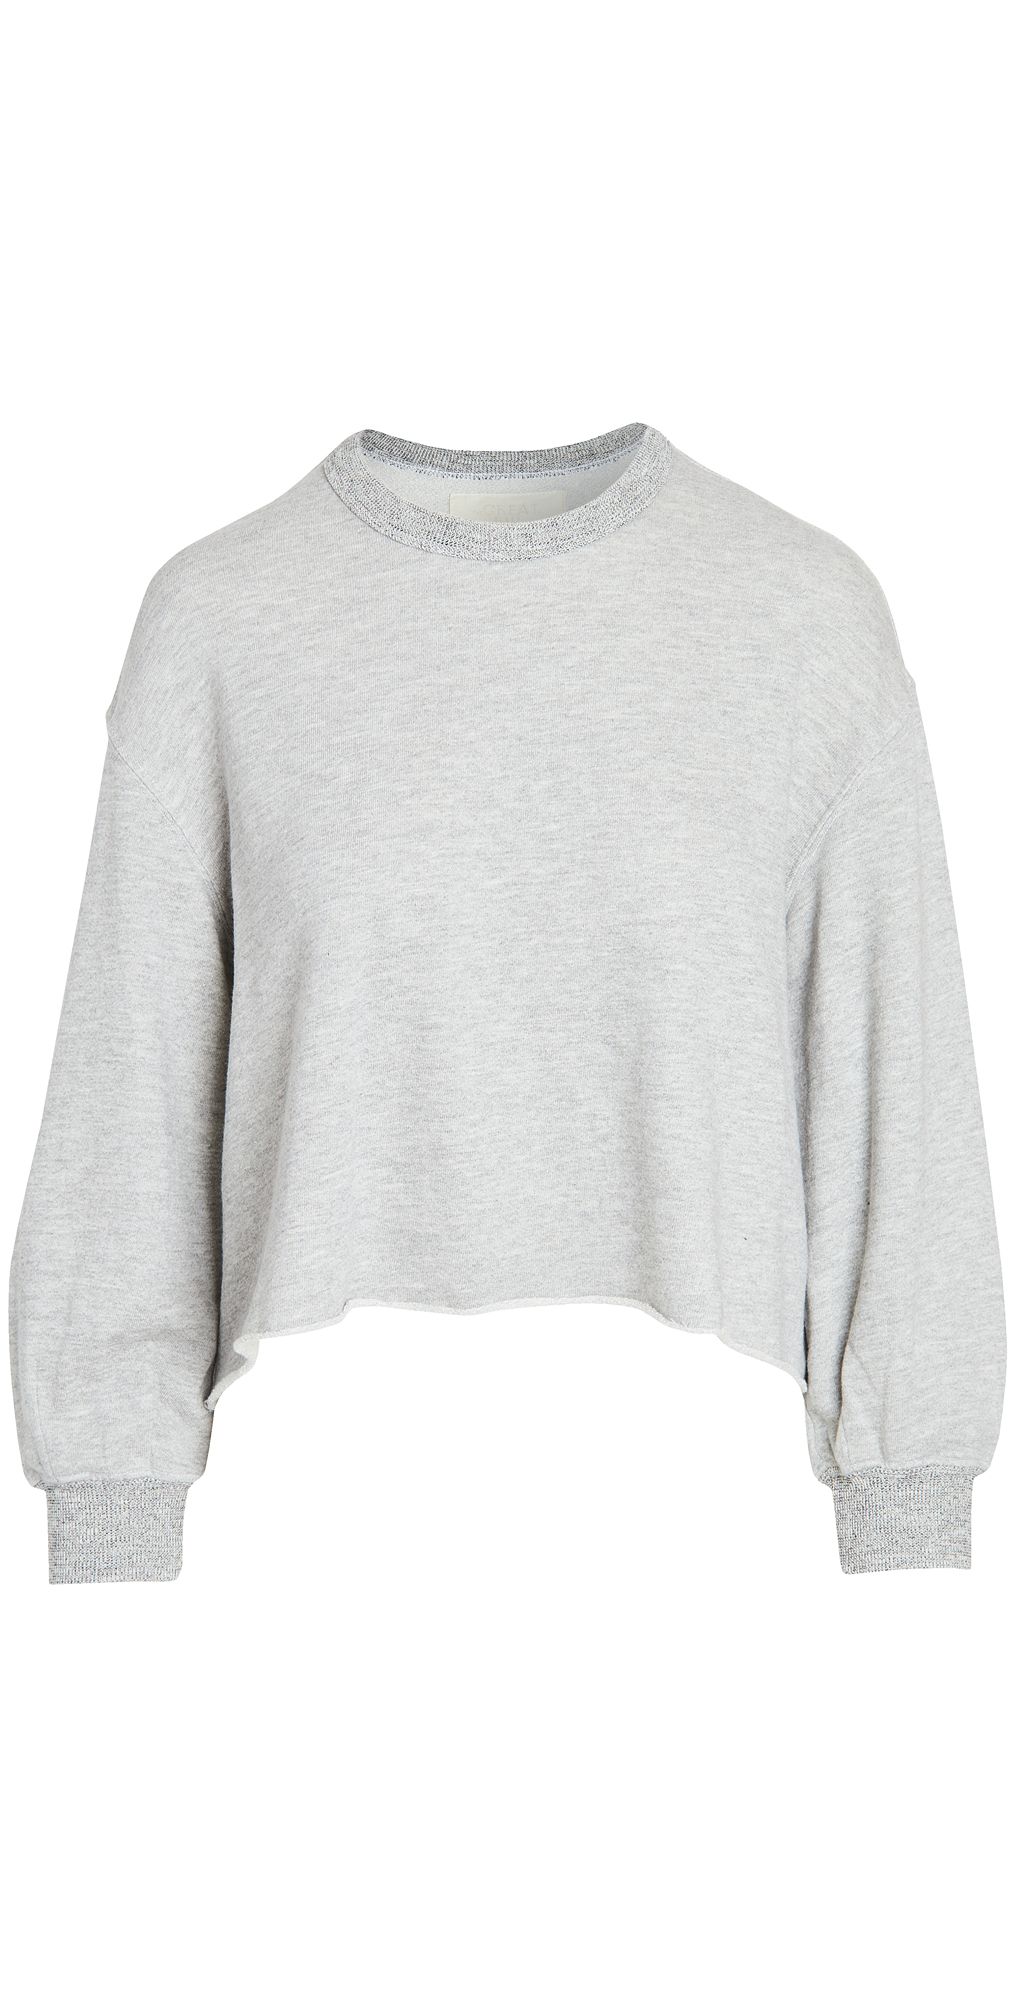 THE GREAT. The Sleep Cutoff Sweatshirt | Shopbop